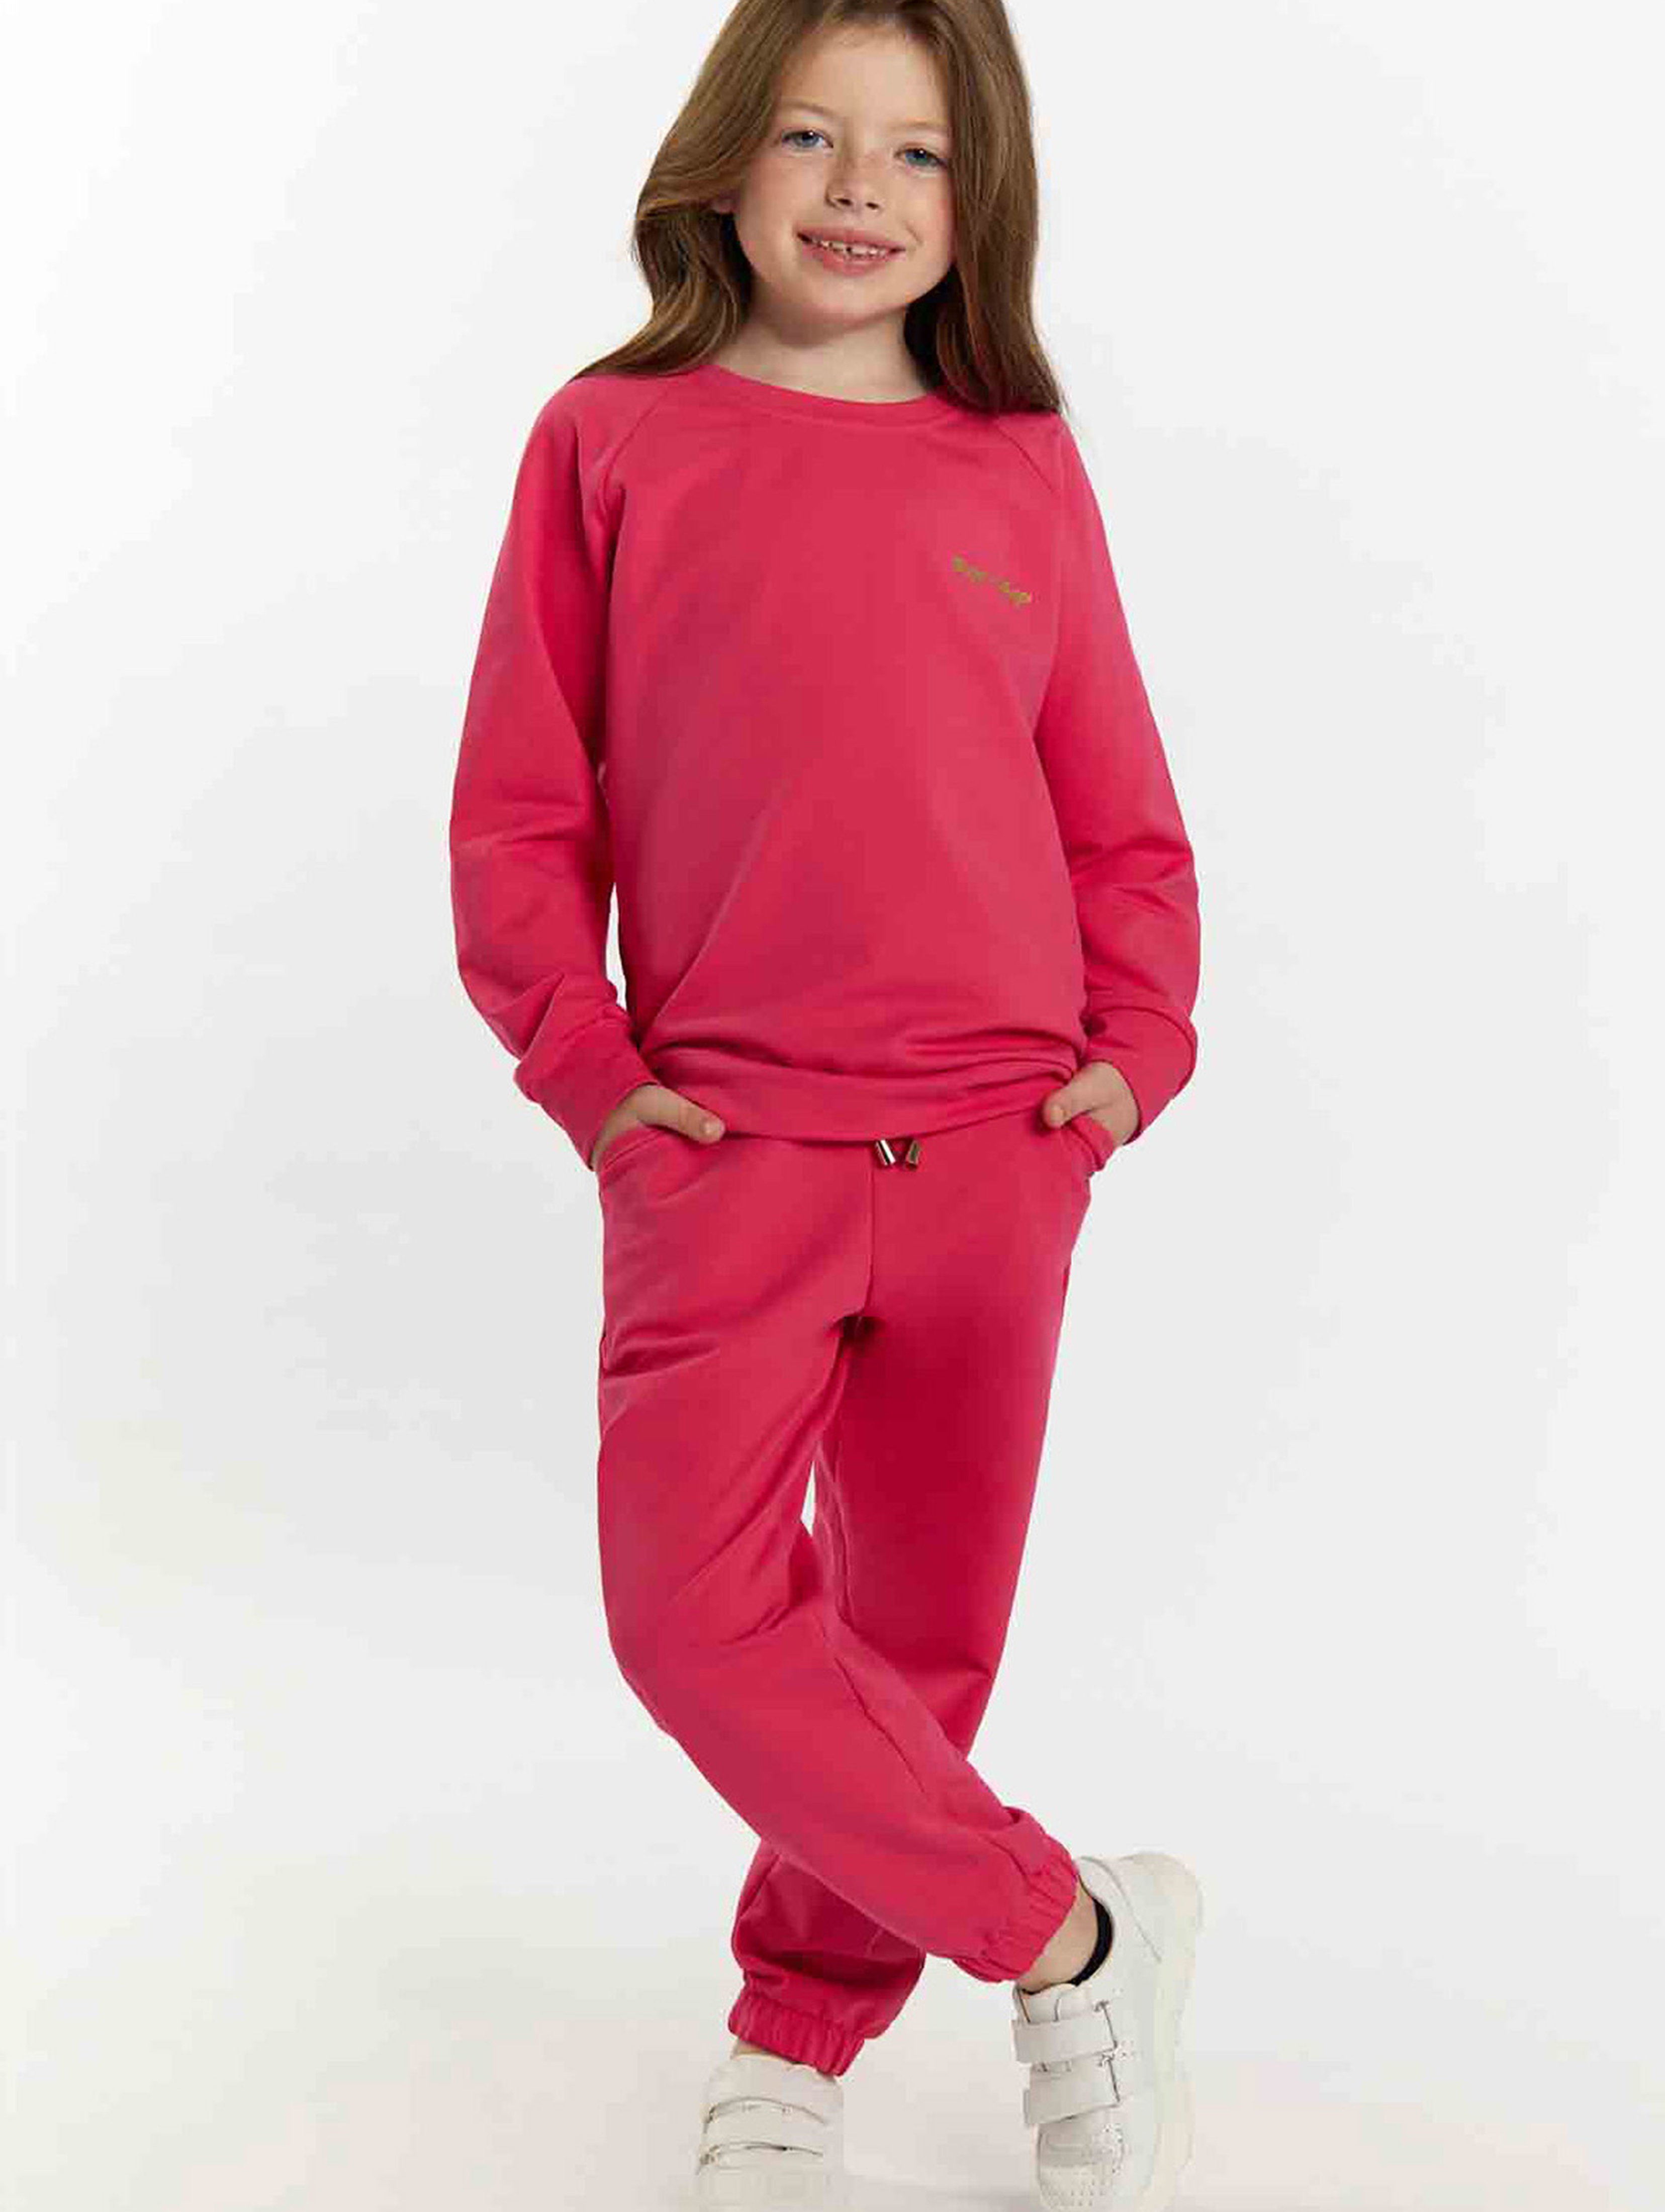 Komplet dresowy dziewczęcy - bluza i spodnie dresowe - różowy